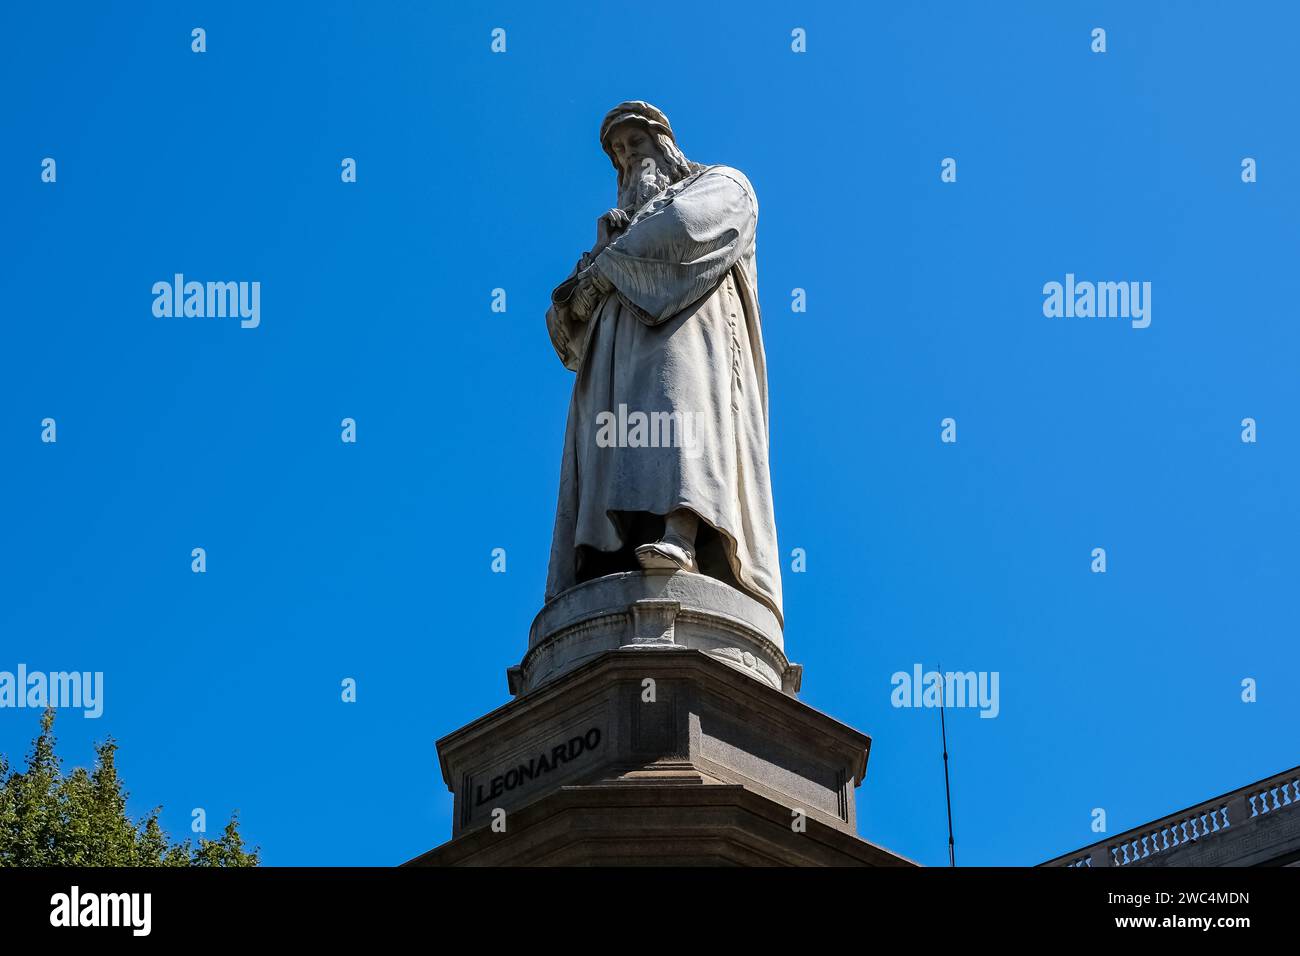 Dettaglio del monumento a Leonardo da Vinci, un gruppo scultoreo commemorativo situato in Piazza della Scala di Milano Foto Stock